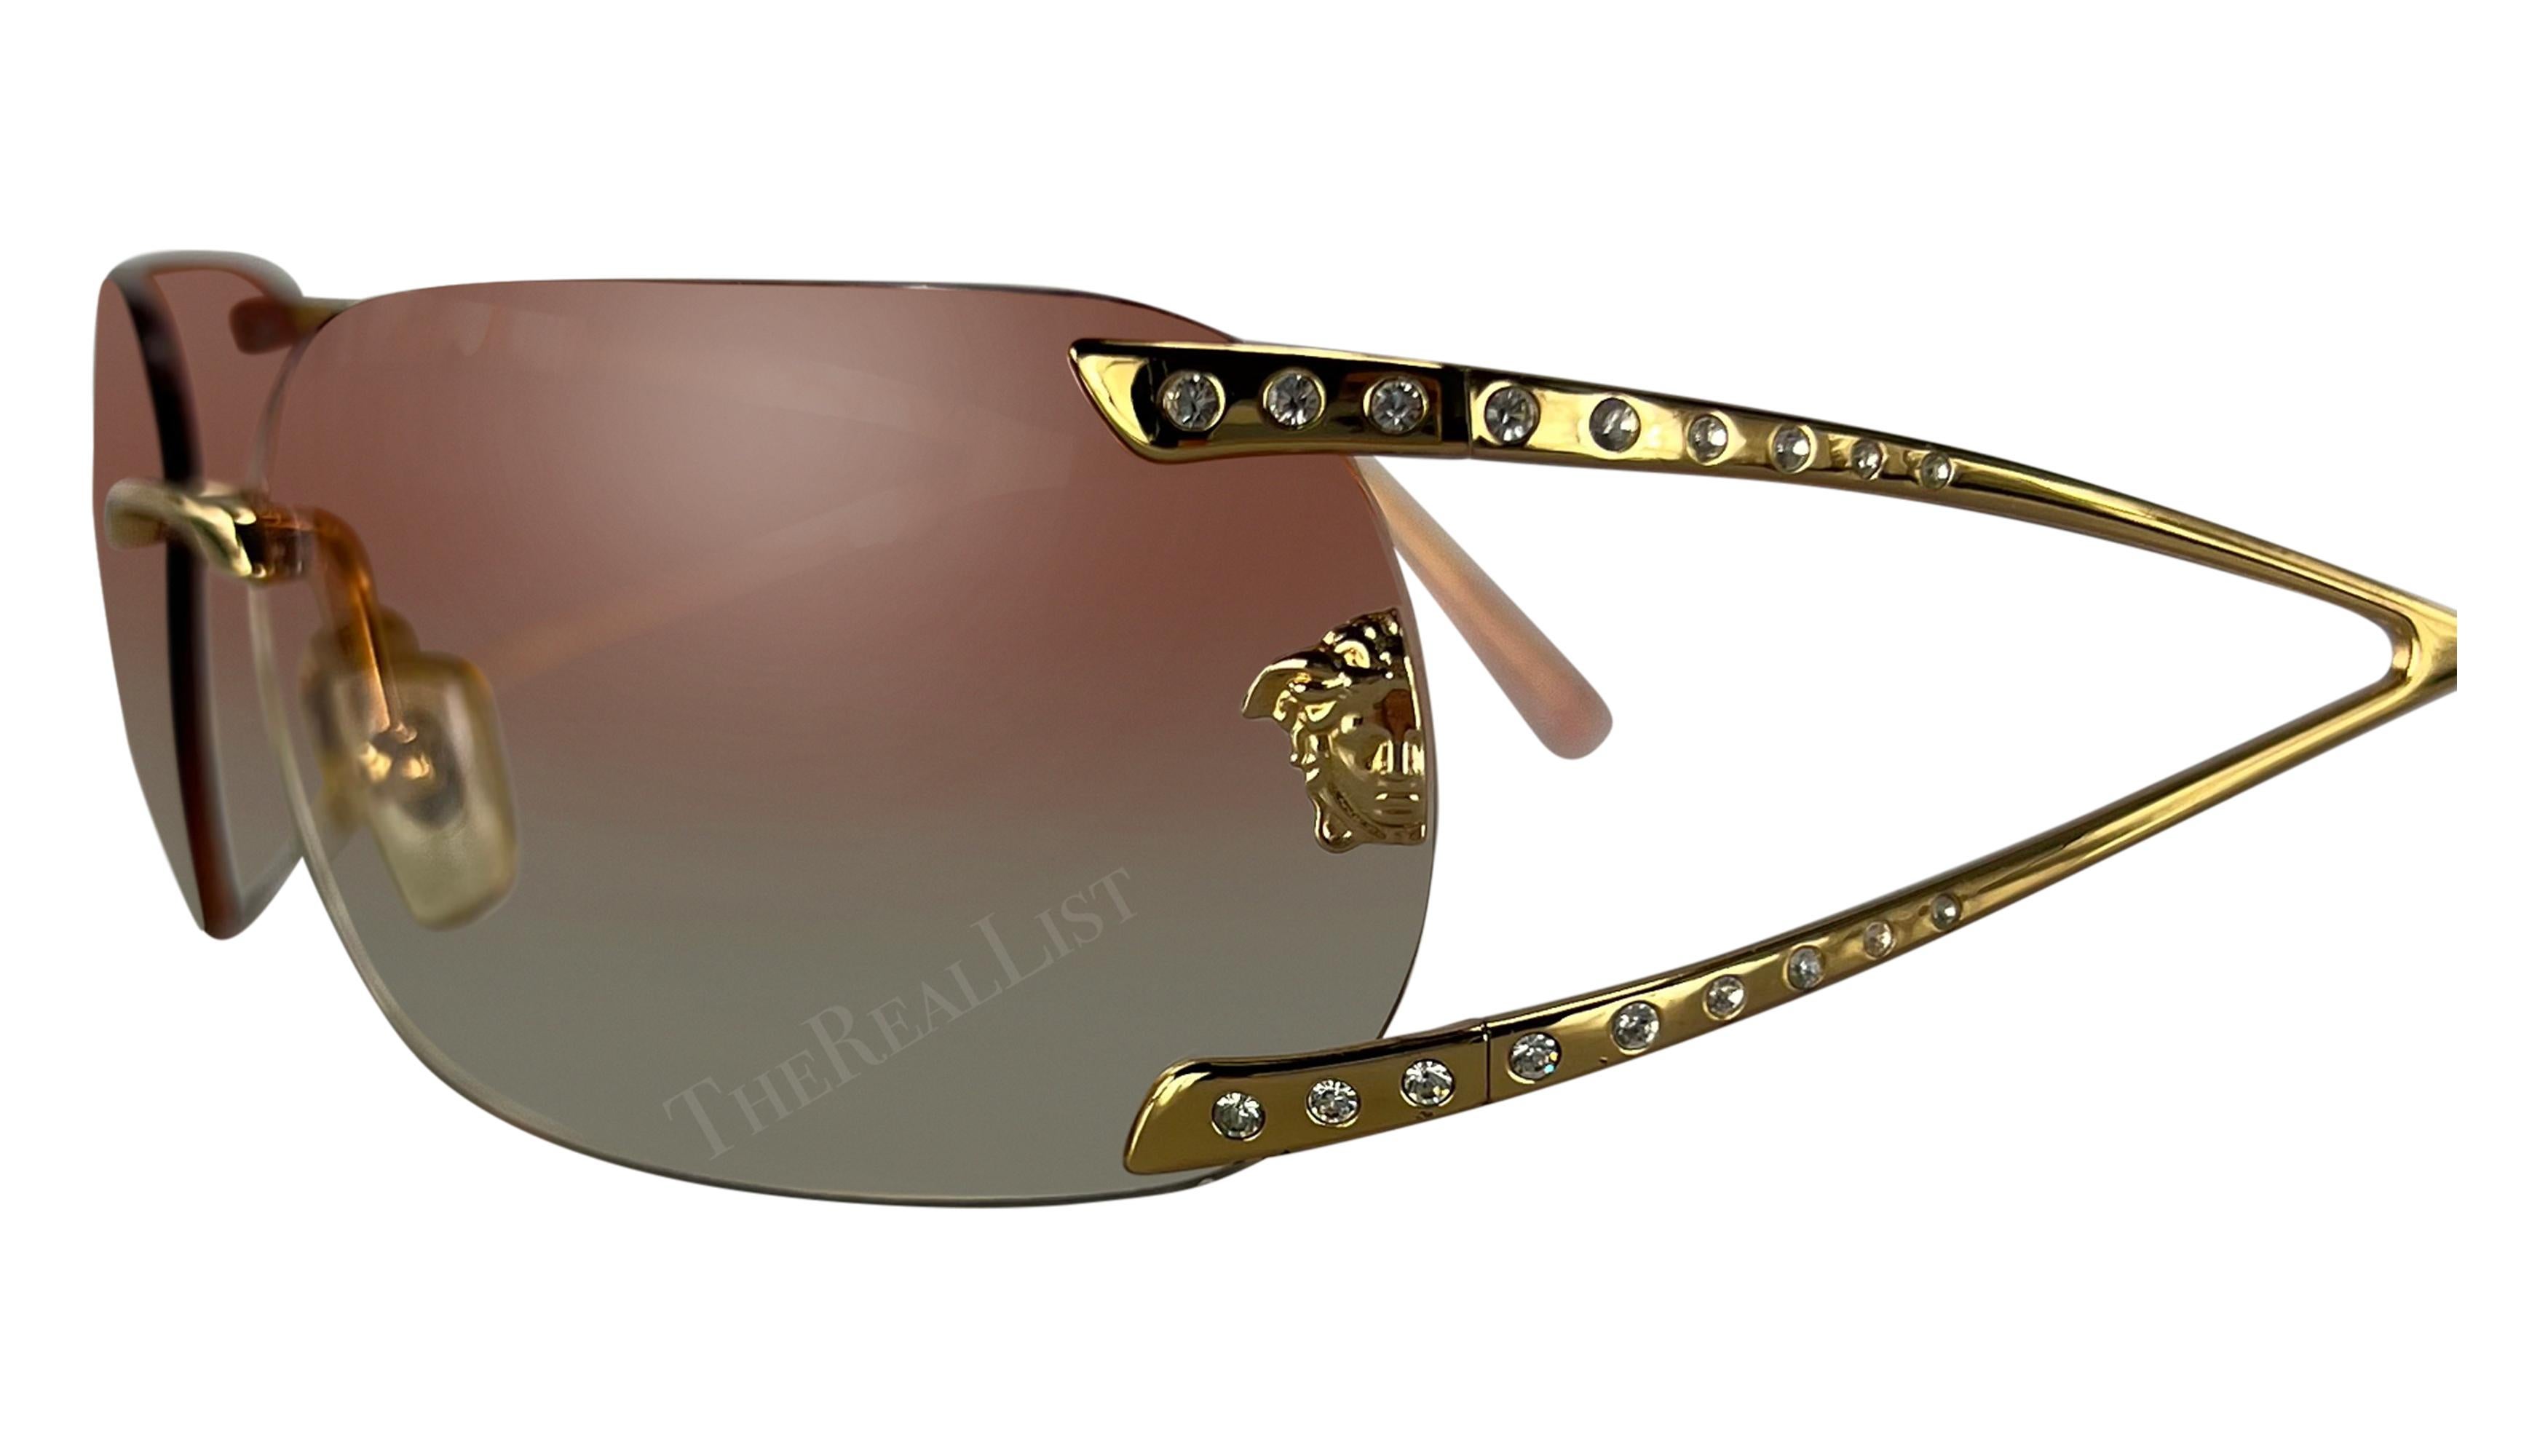 Diese übergroße, randlose Sonnenbrille von Versace aus den frühen 2000er Jahren wurde von Donatella Versace entworfen. Sie verfügt über pinkfarbene Ombre-Gläser und strassbesetzte, goldfarbene Bügel und ist mit einem Medusa-Logo von Versace auf